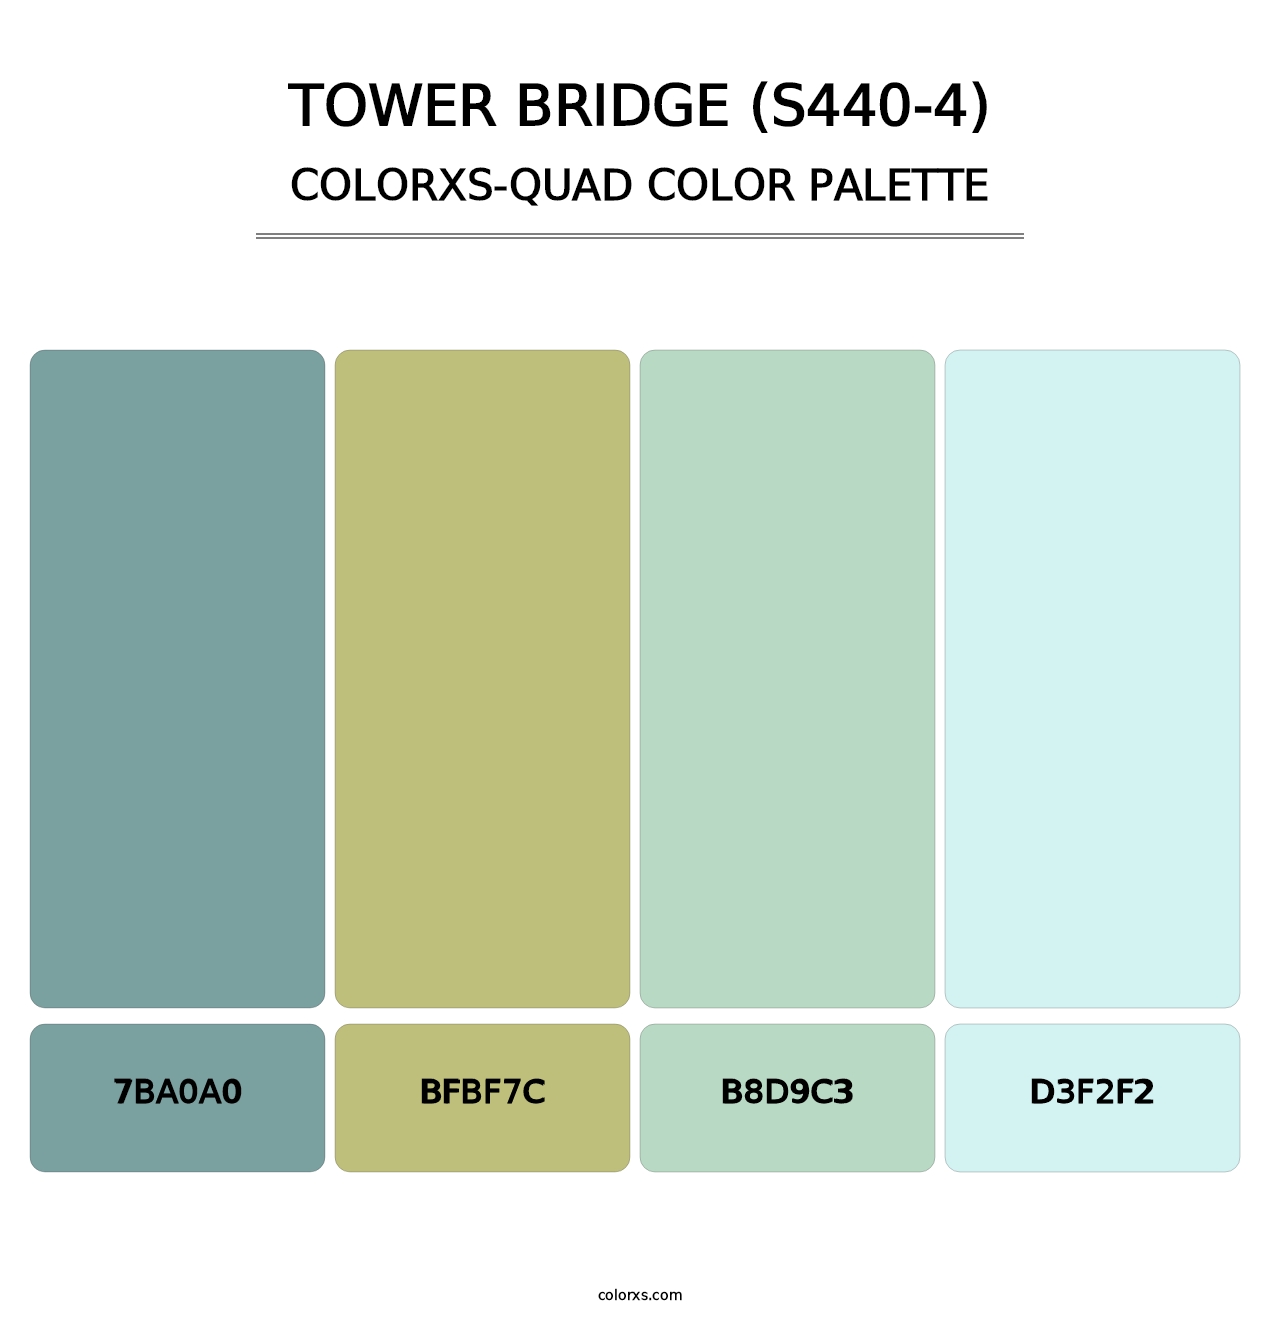 Tower Bridge (S440-4) - Colorxs Quad Palette